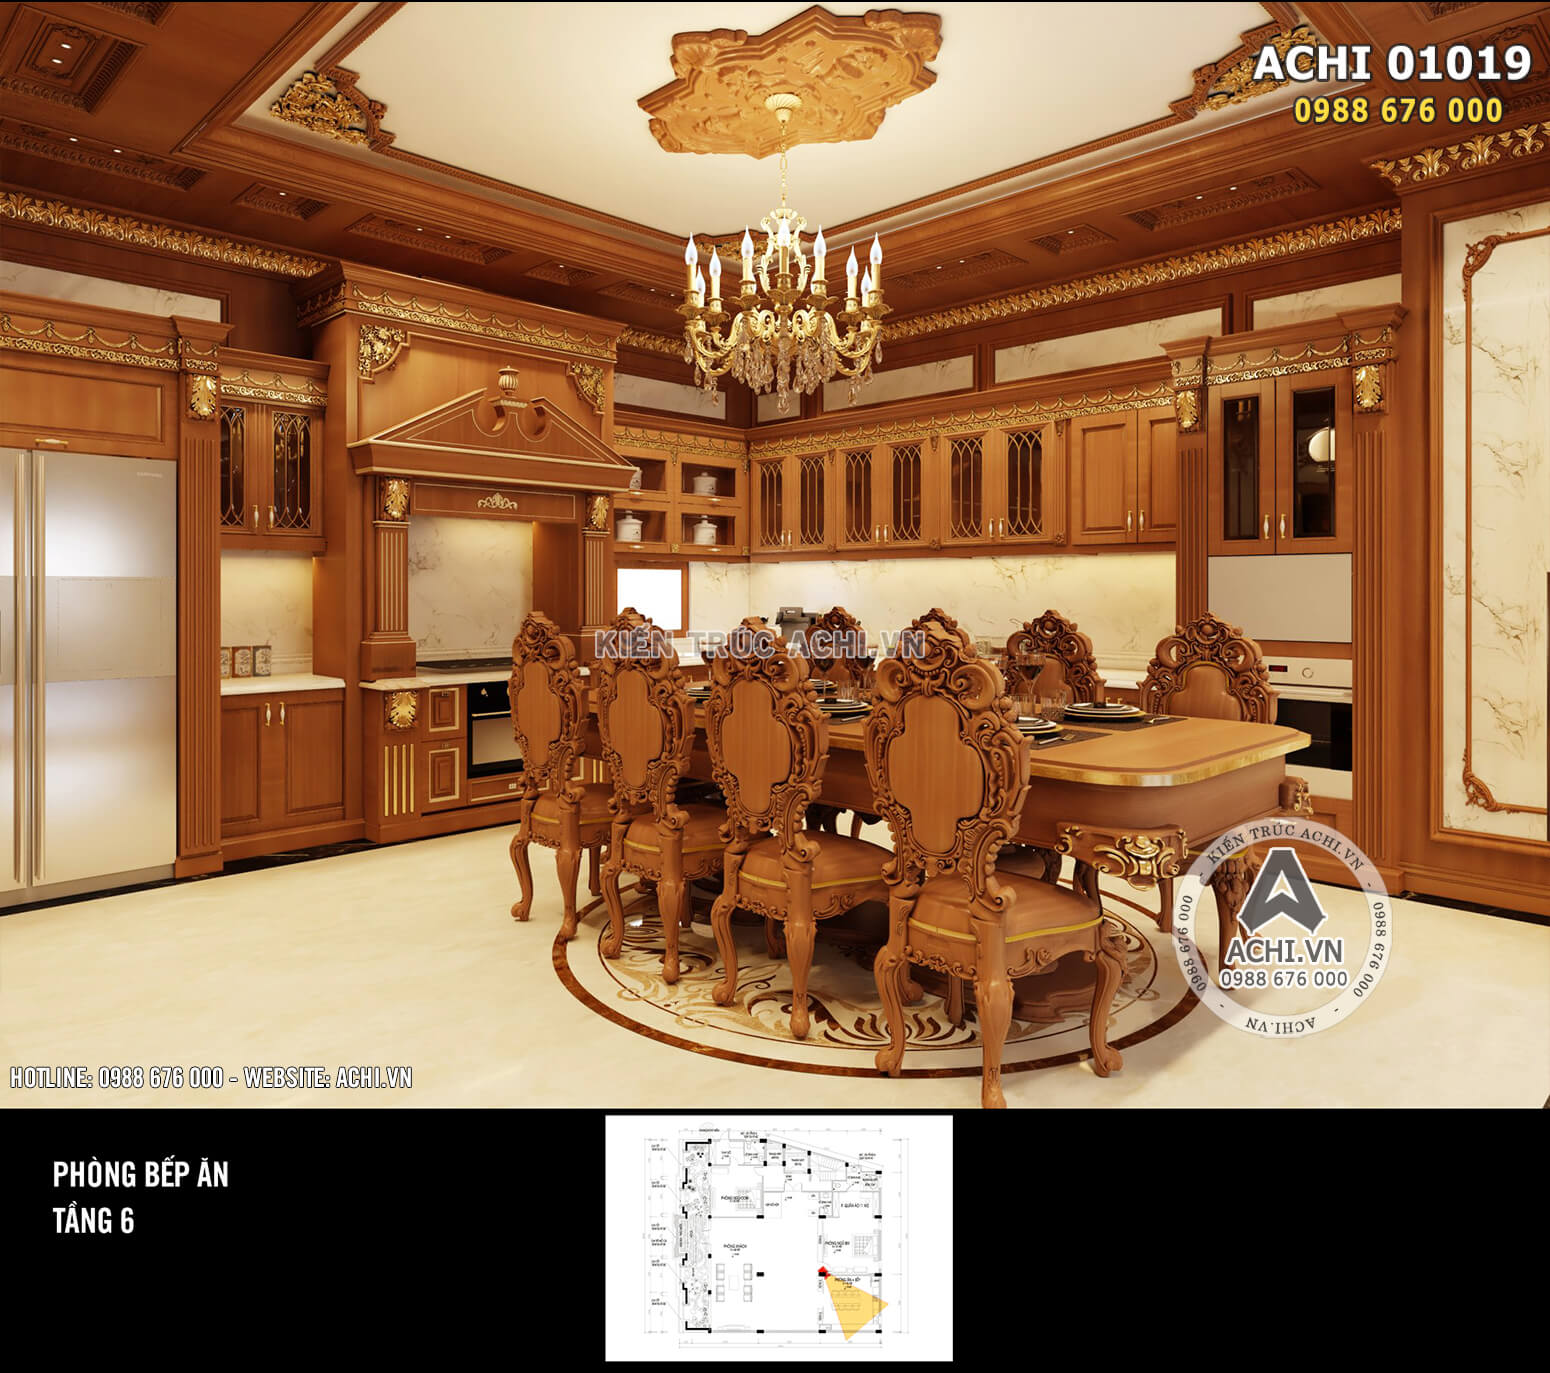 Hình ảnh: Phòng ăn với nội thất bằng gỗ tân cổ điển đẹp mắt – ACHI 01019